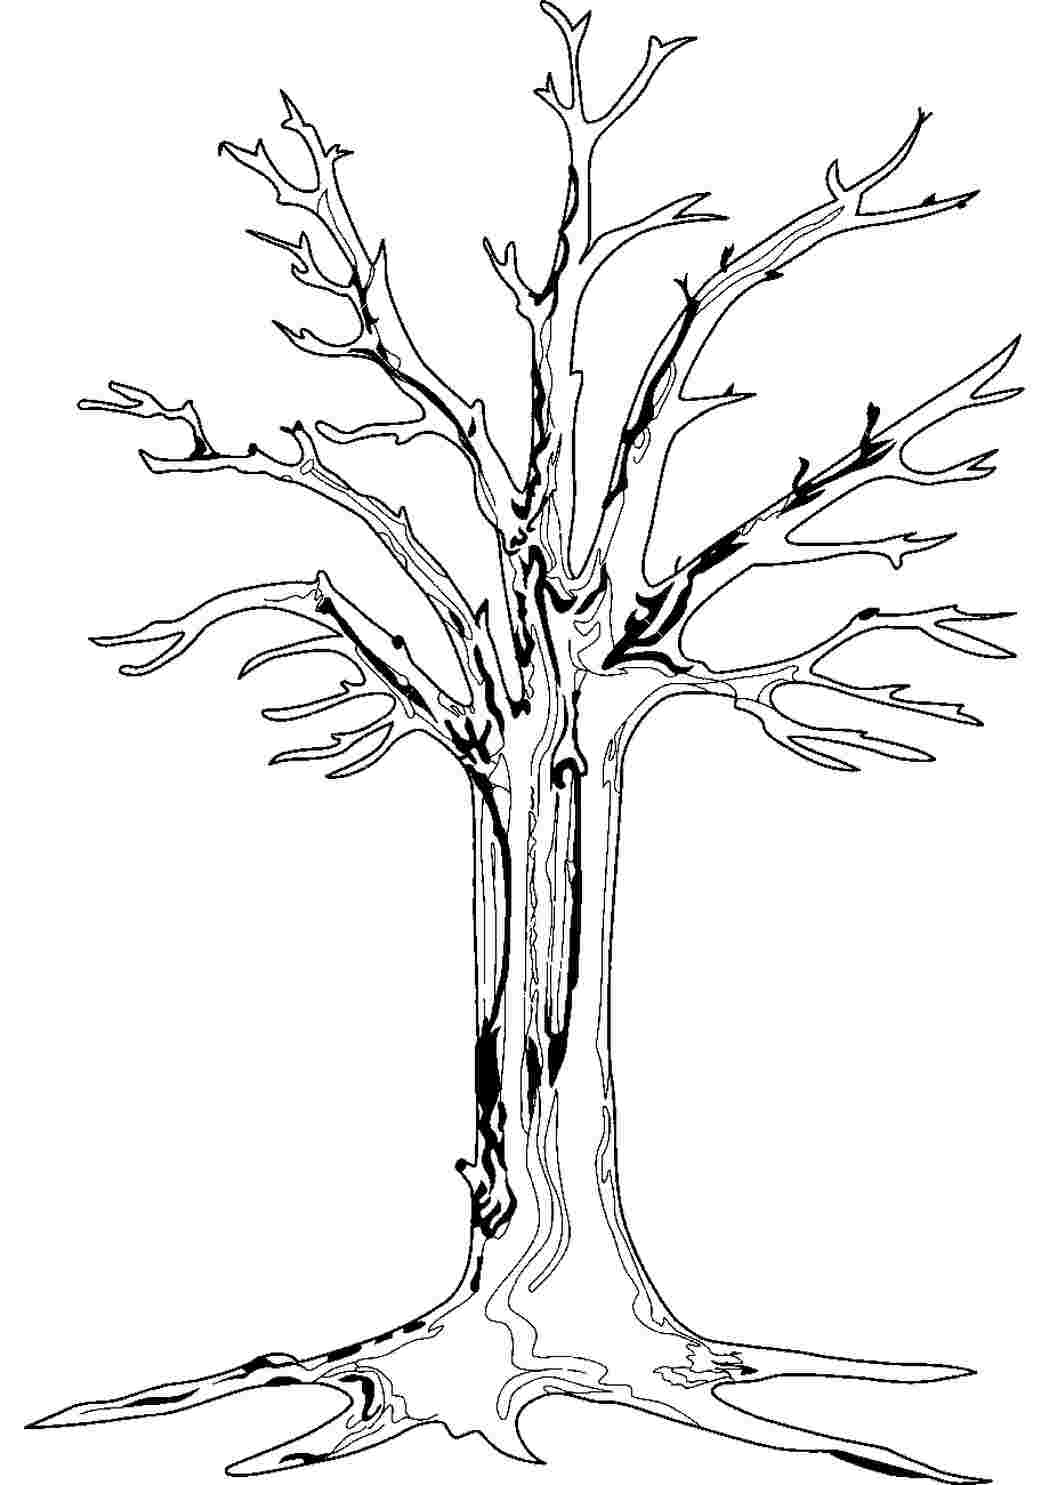 Шаблон дерева с корнями без листьев